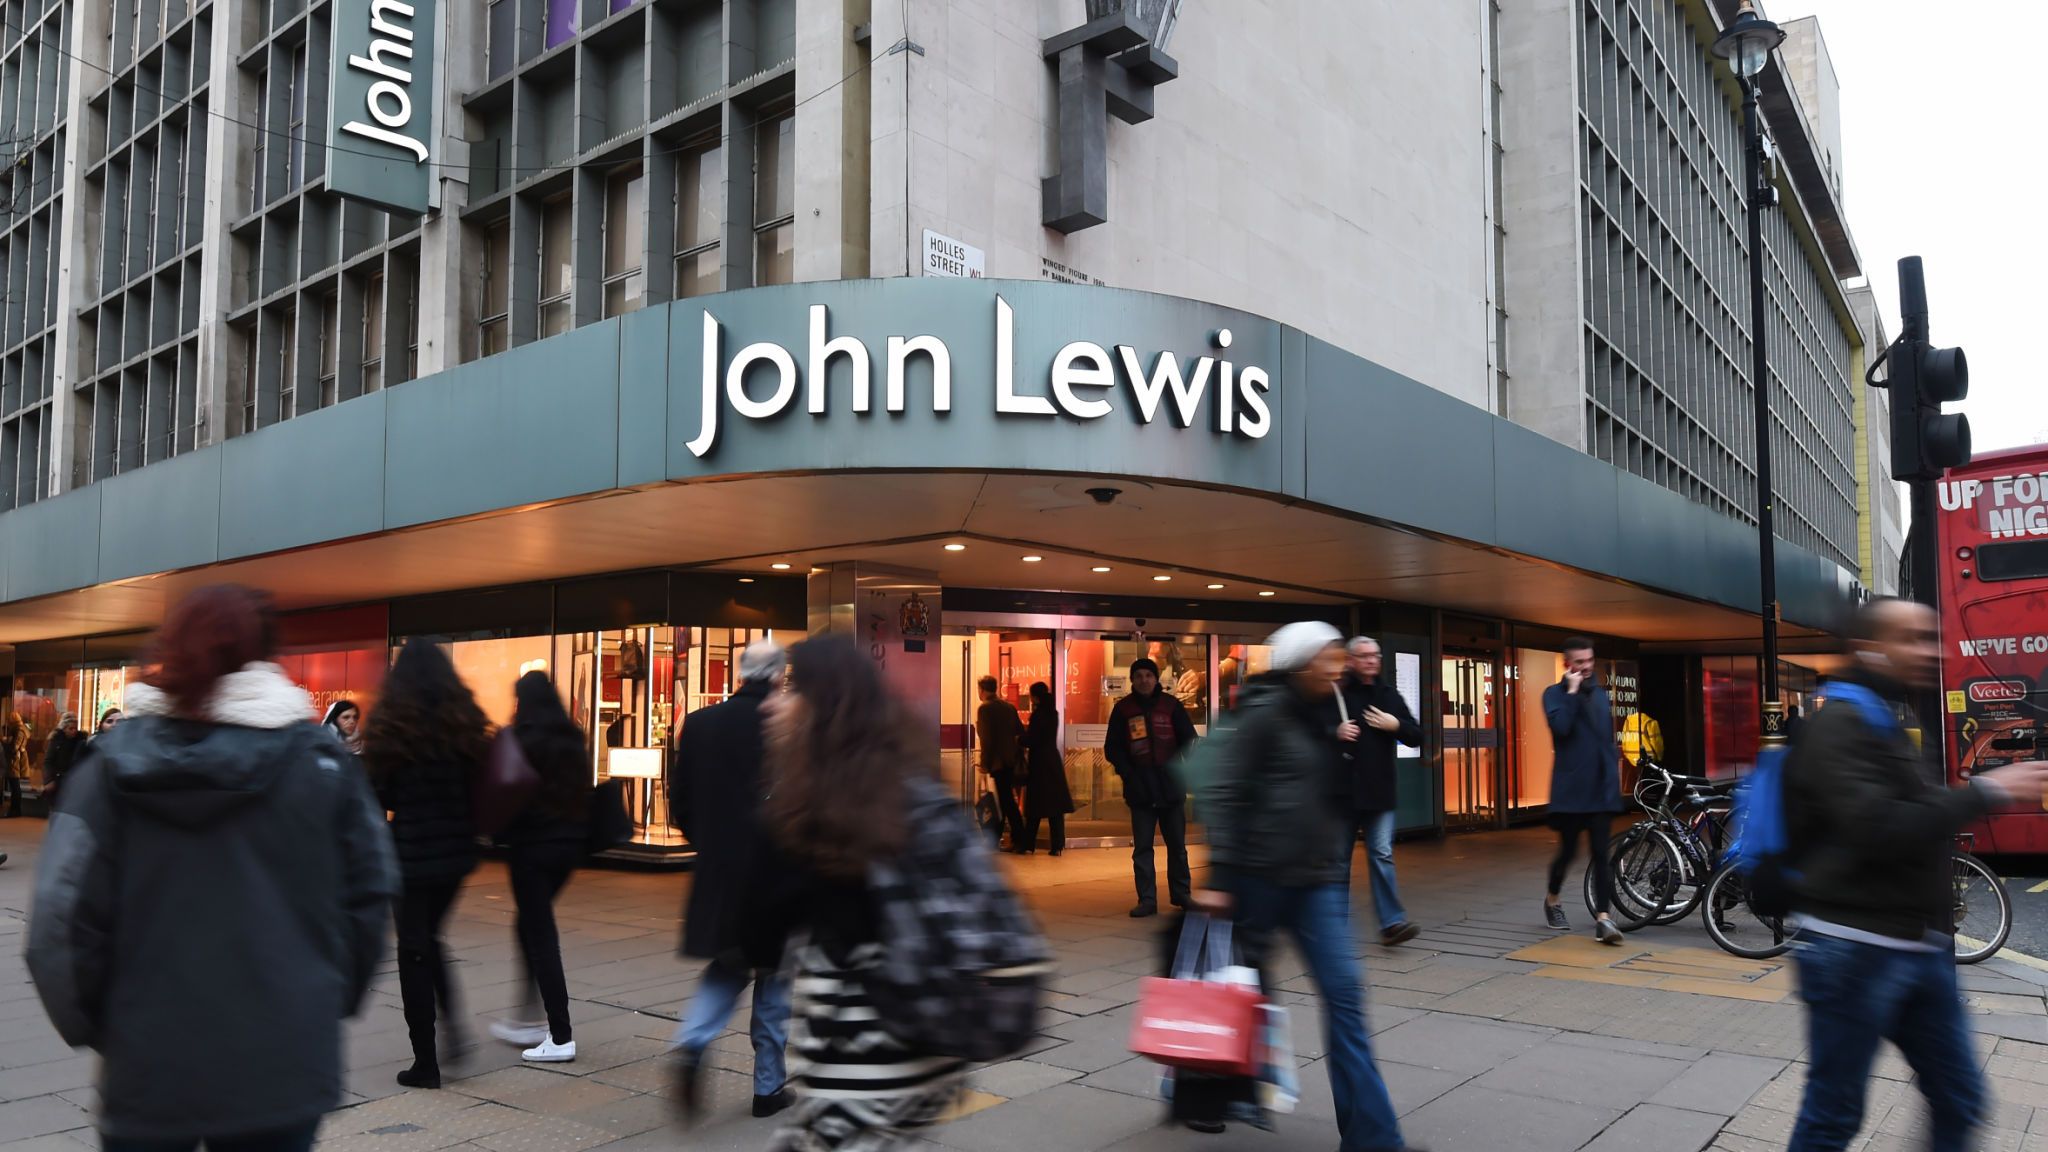 John Lewis On Oxford Street In London - Oxford Street - HD Wallpaper 